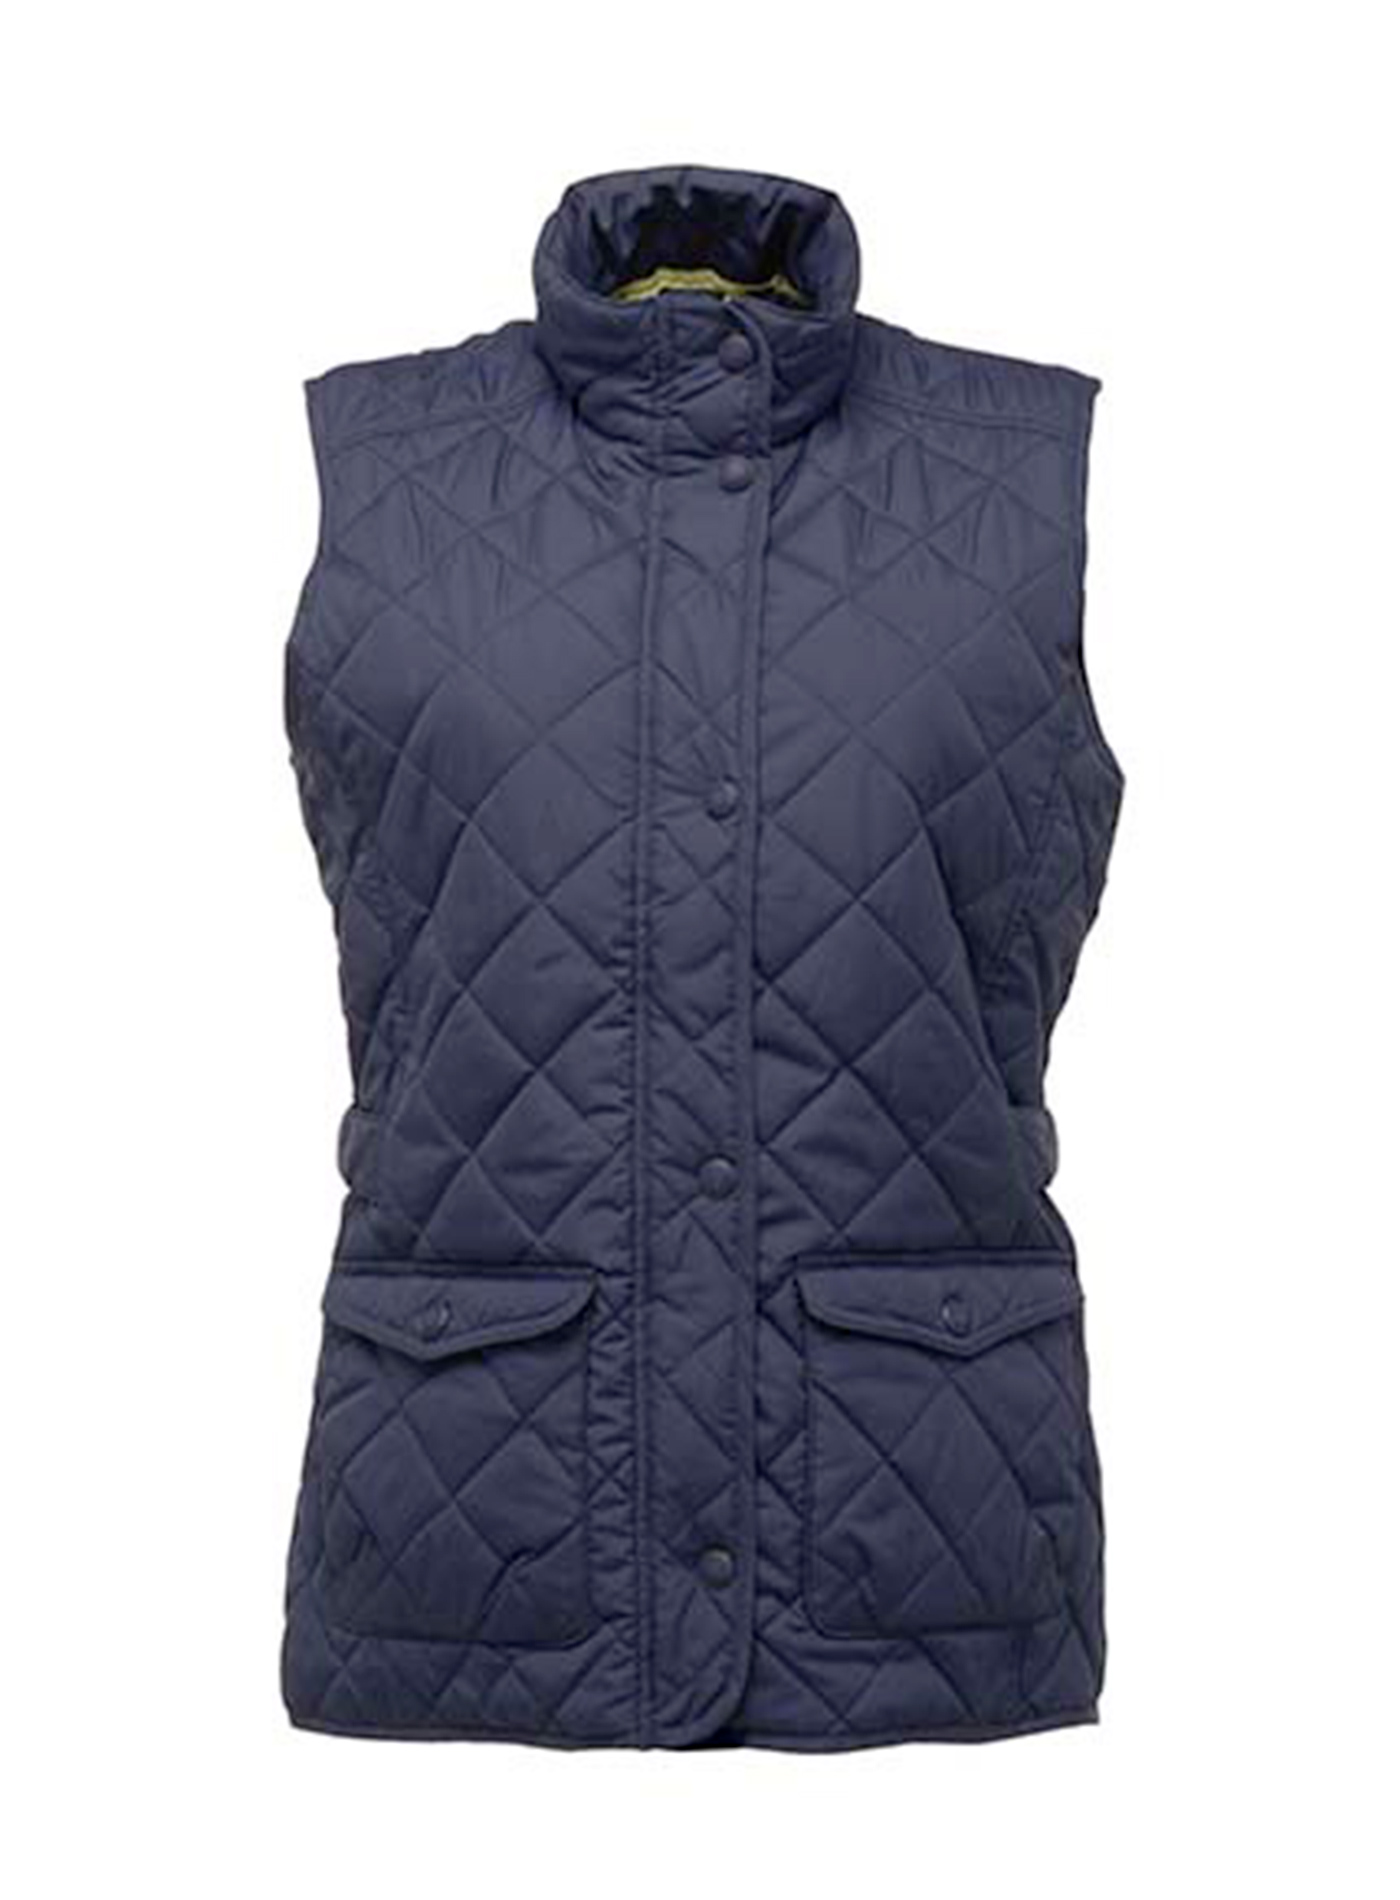 Dámská prošívaná vesta Regata Profesional Tyler - Námořnická modrá XL